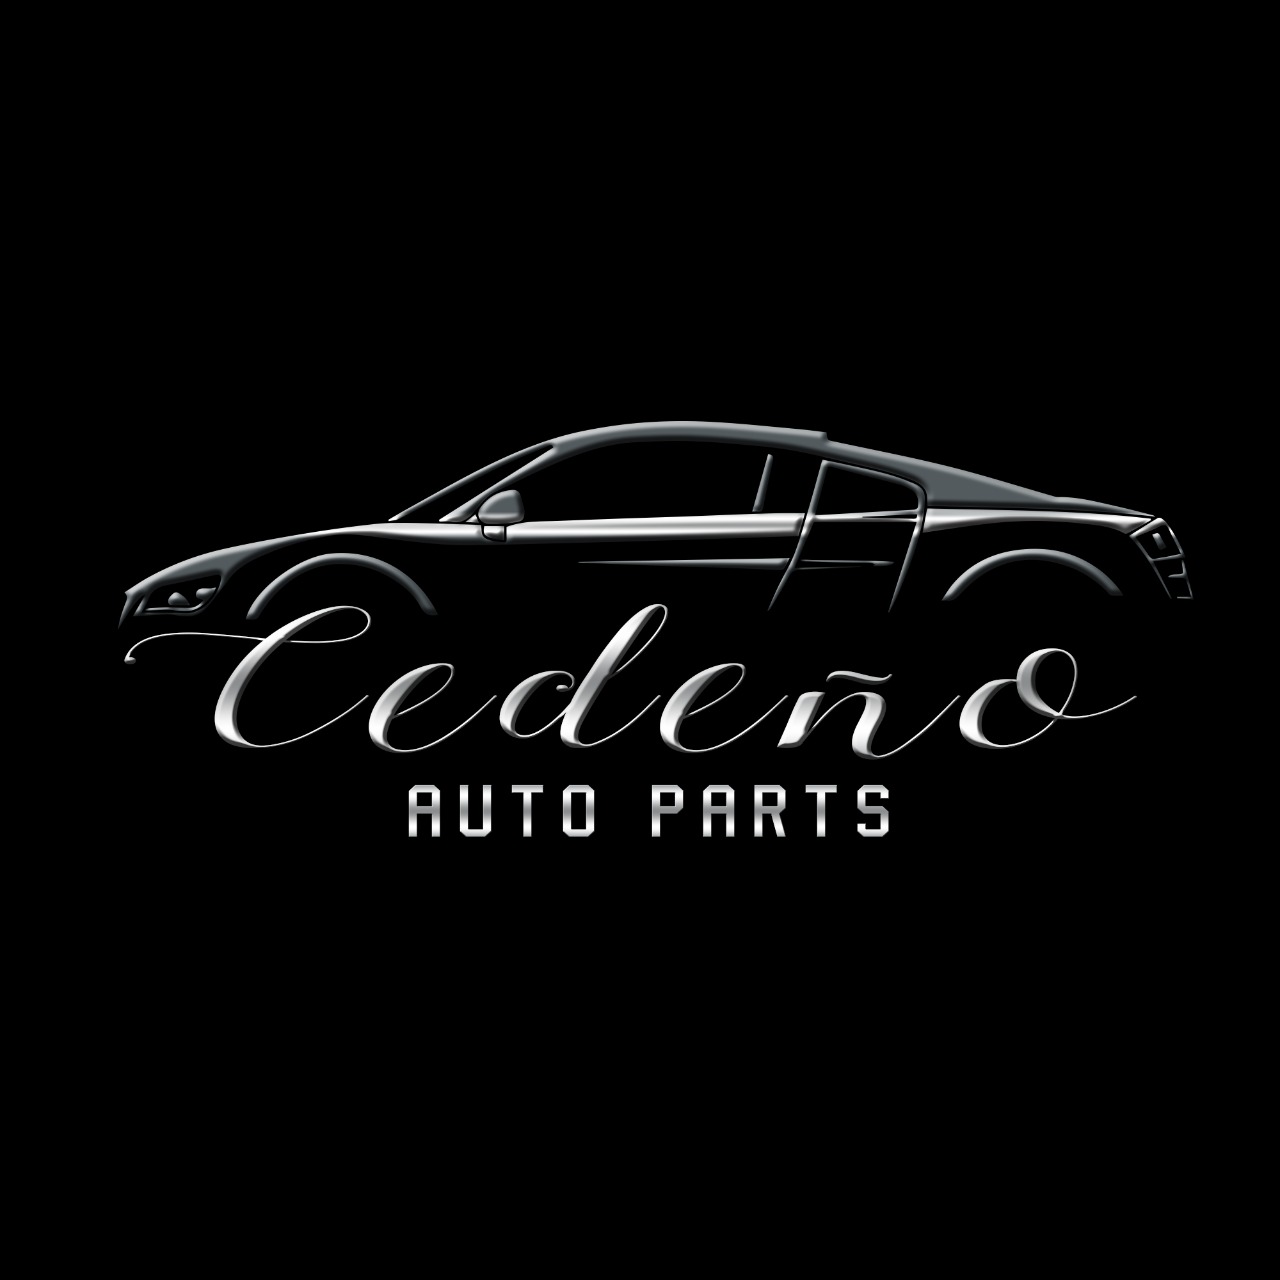 Cedeno-Auto-Parts-Logo.jpg